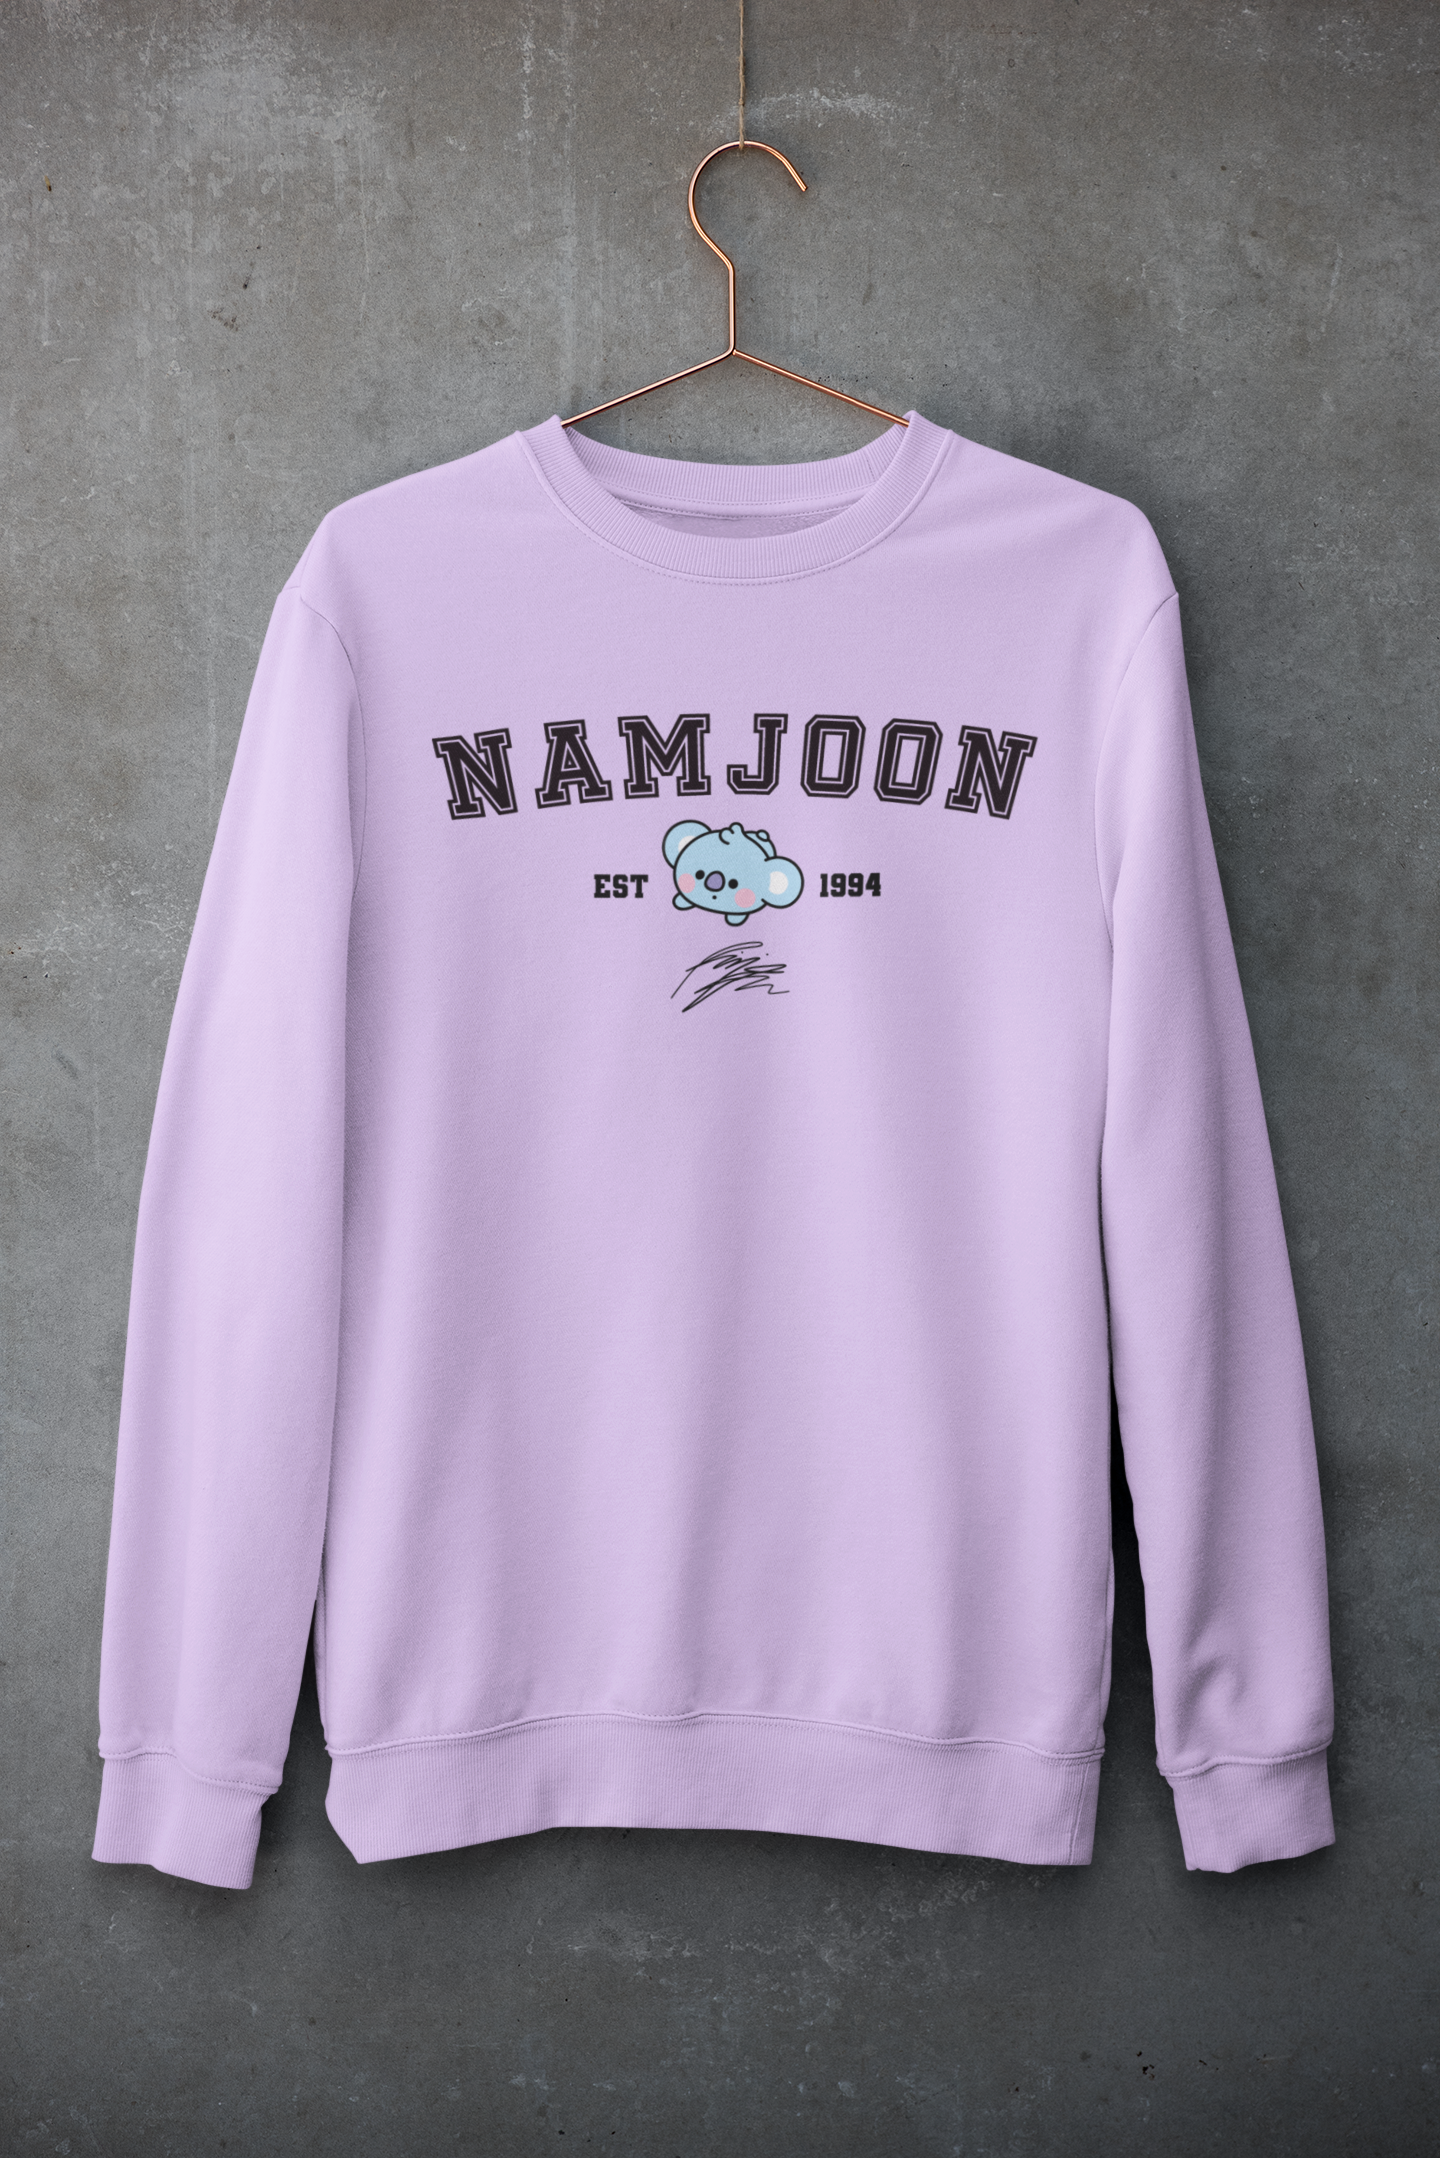 Namjoon- Koya: BTS- Winter Sweatshirts